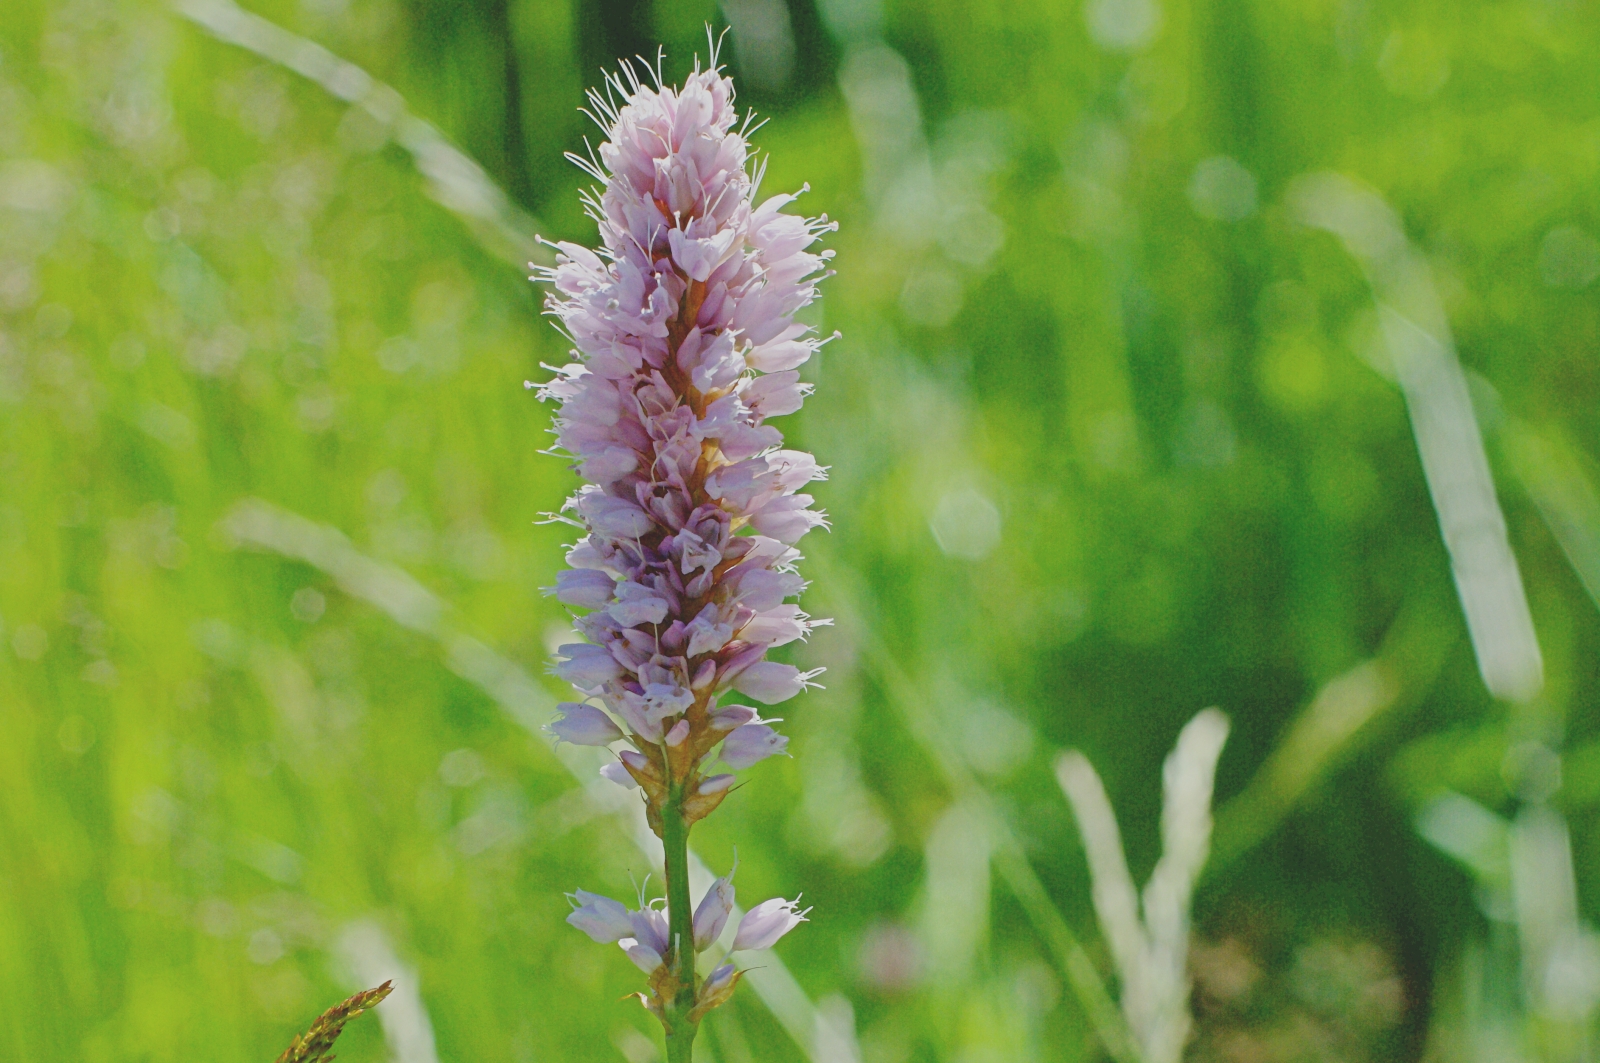 イブキトラノオ 伊吹虎の尾 と同じイブキトラノオ属 Bistorta Officinalis 草原に咲くピンクのボトルブラシのような花